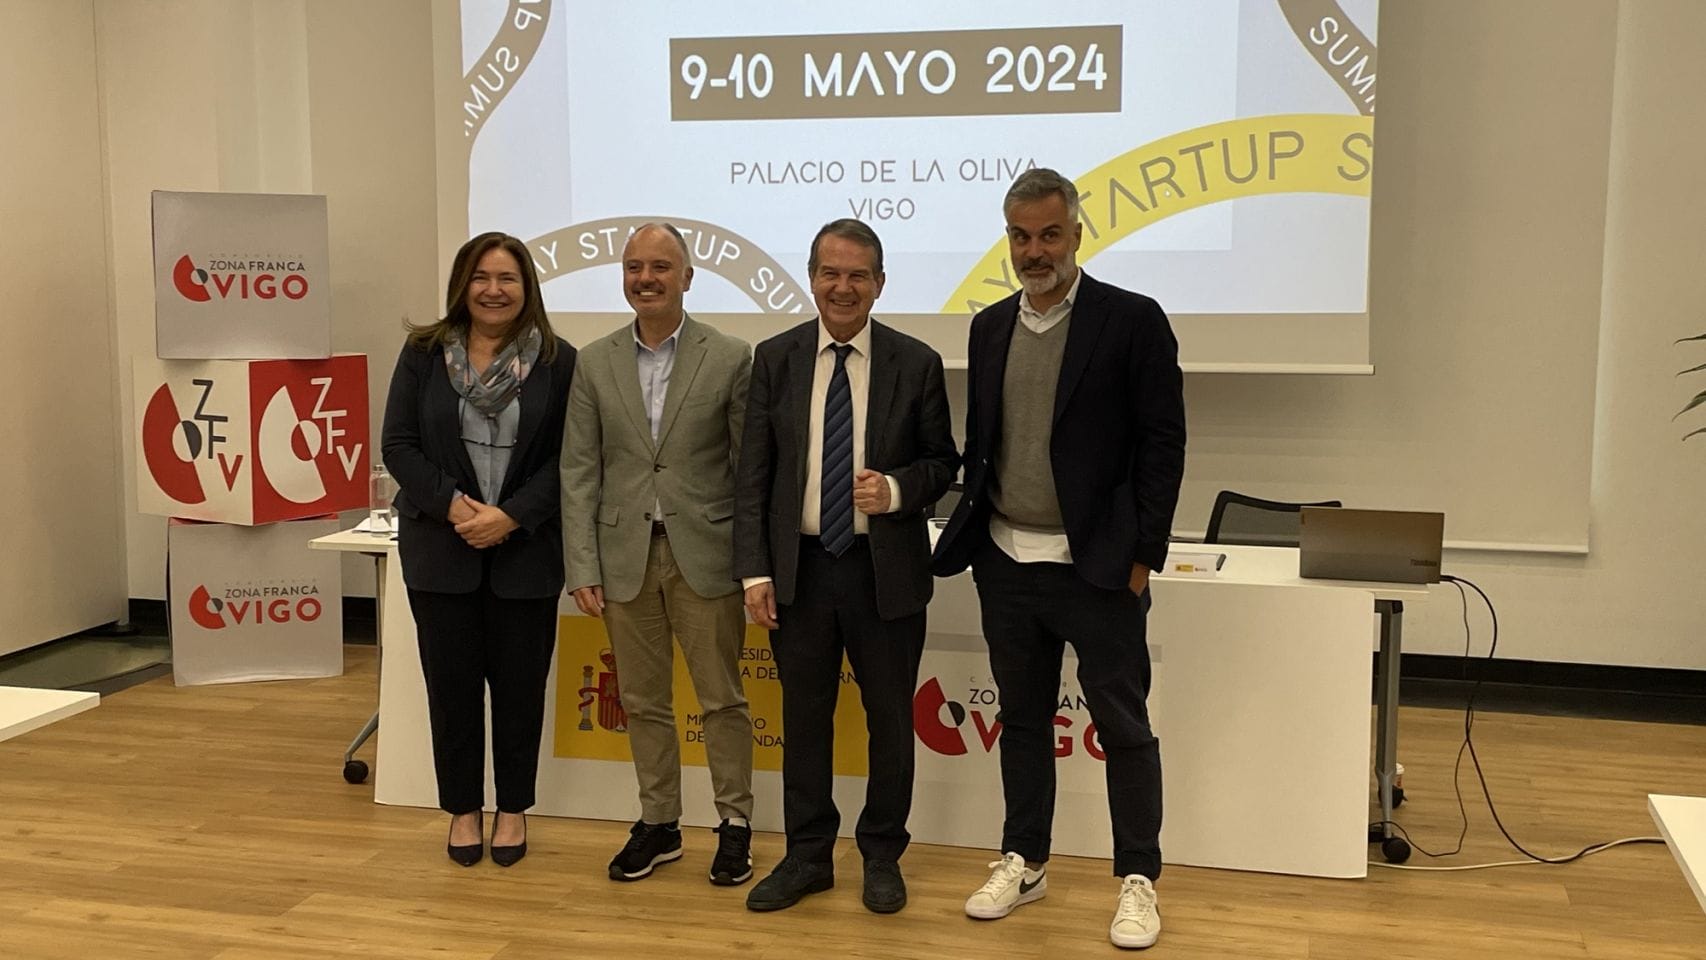 Presentación de The Way Startup Summit 2024 en Vigo. 